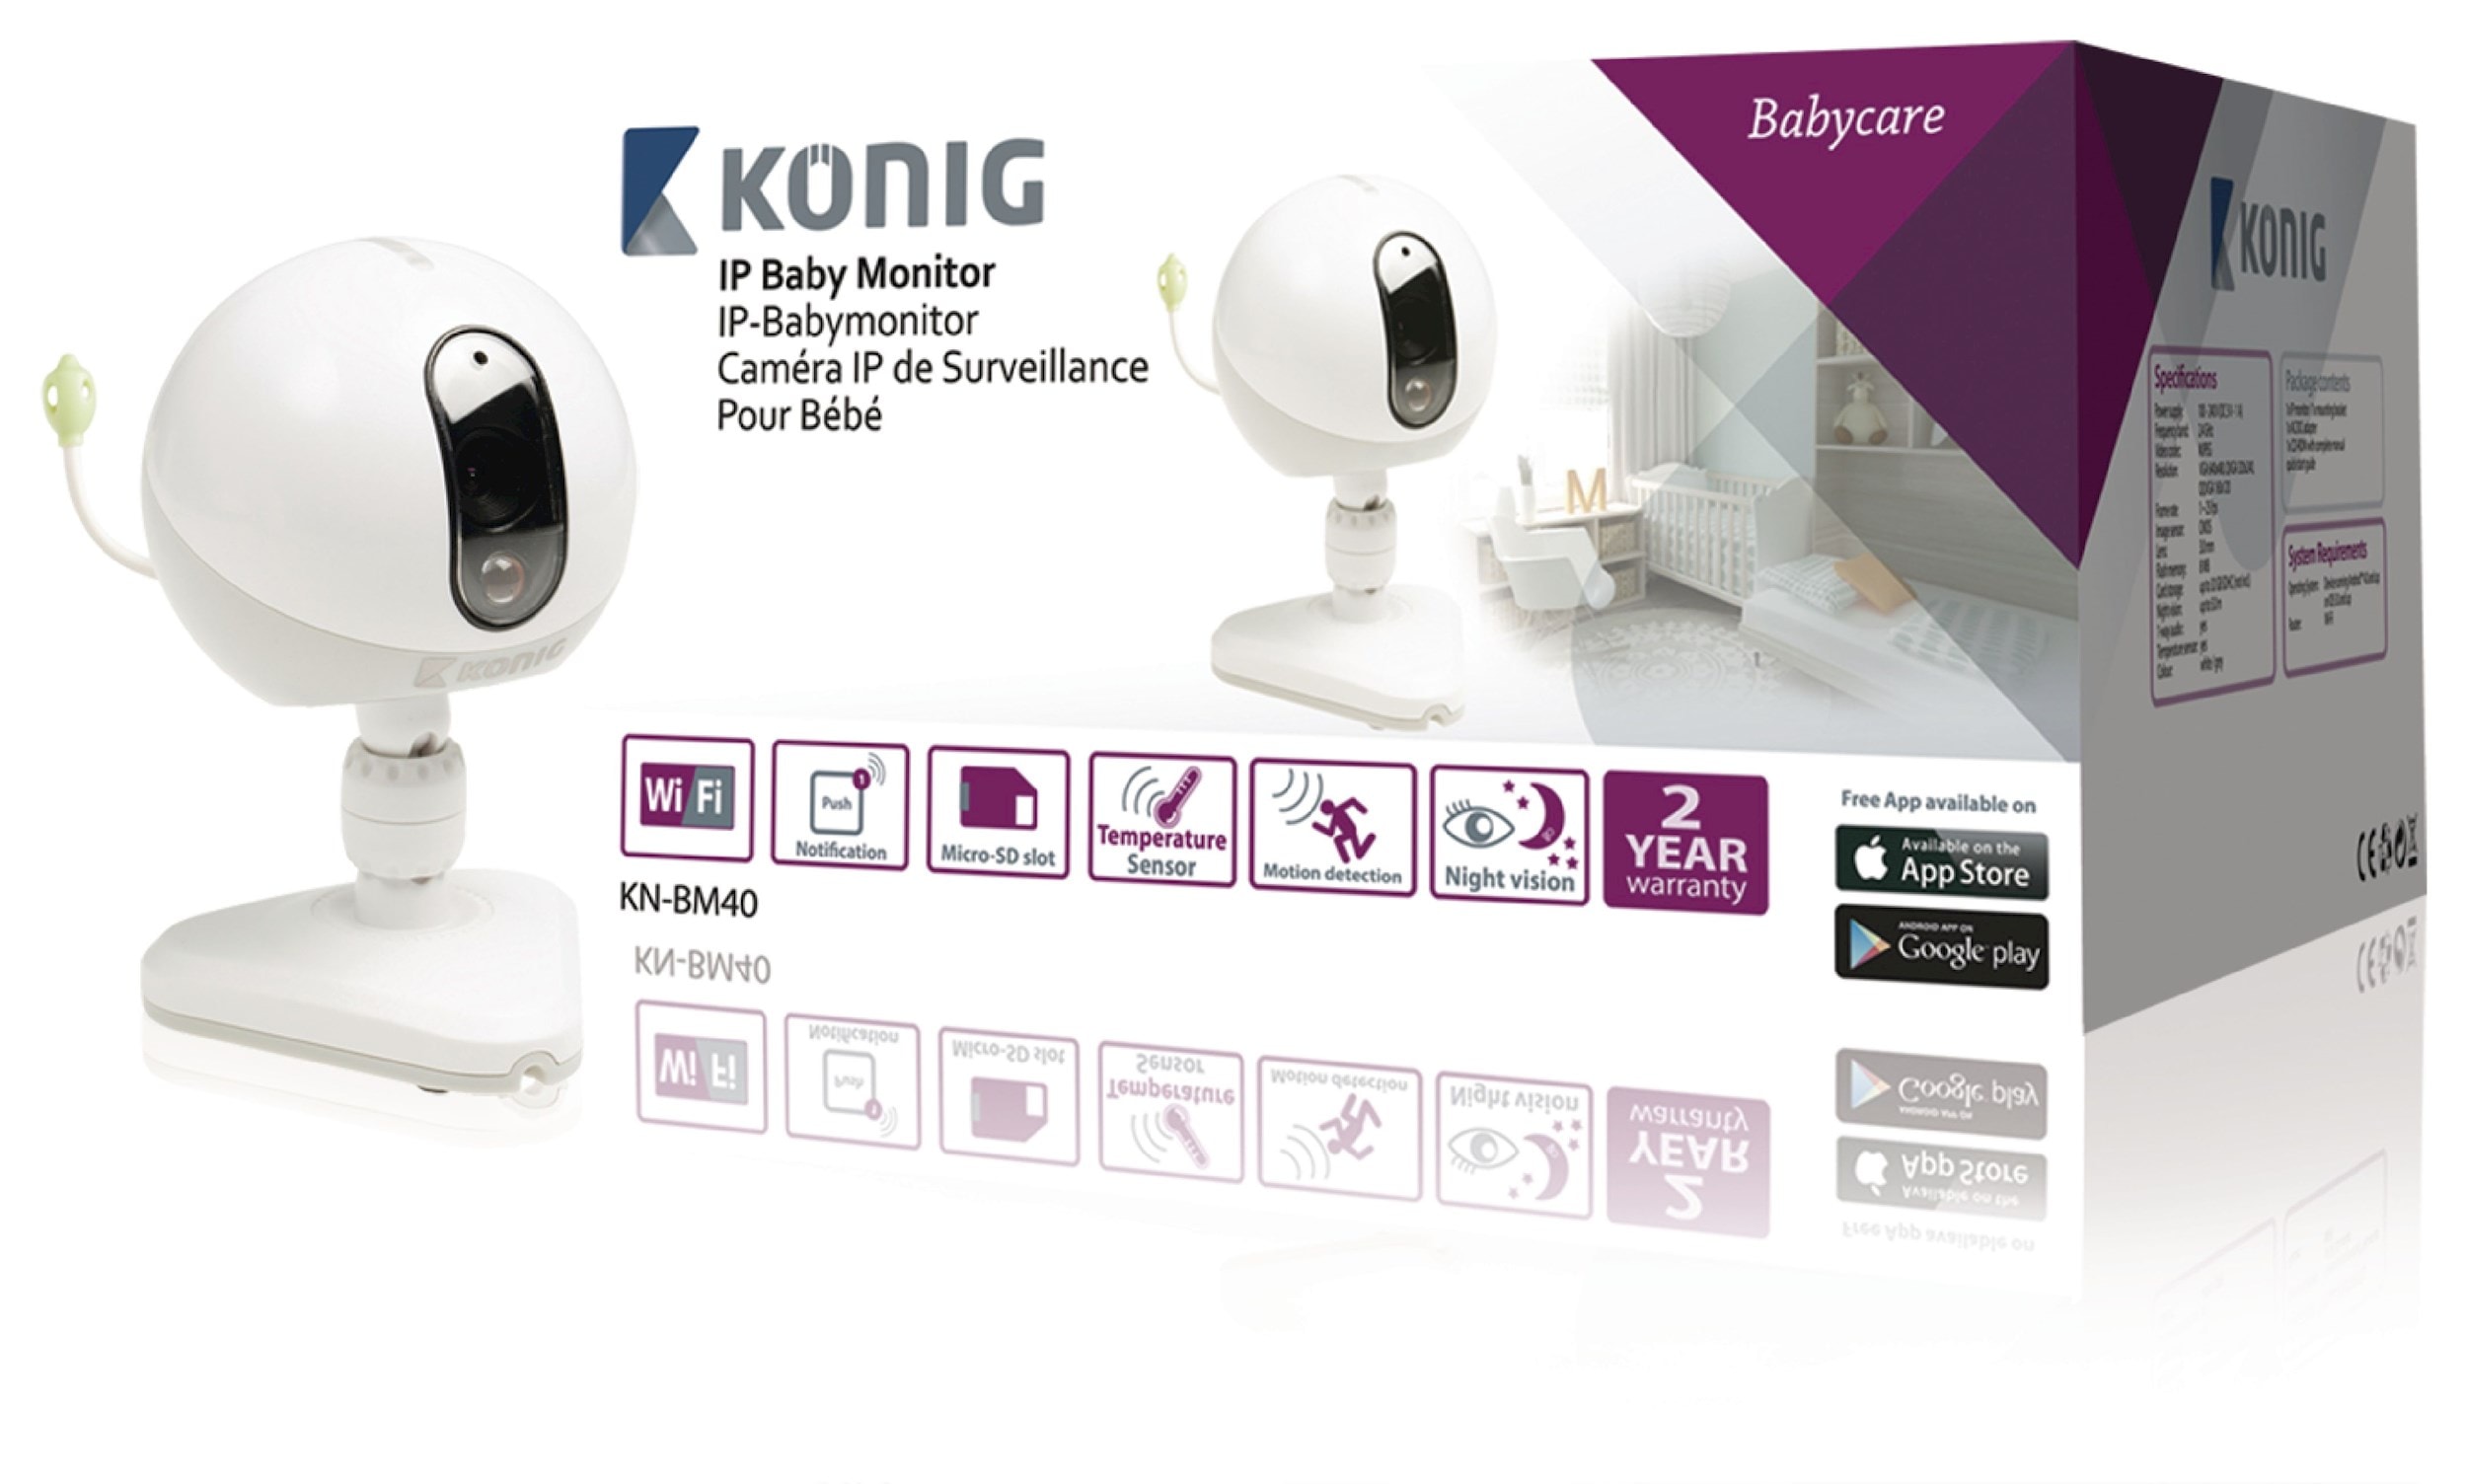 Caméra IP de surveillance pour bébé KONIG KN-BM40 KONIG kn-bm40